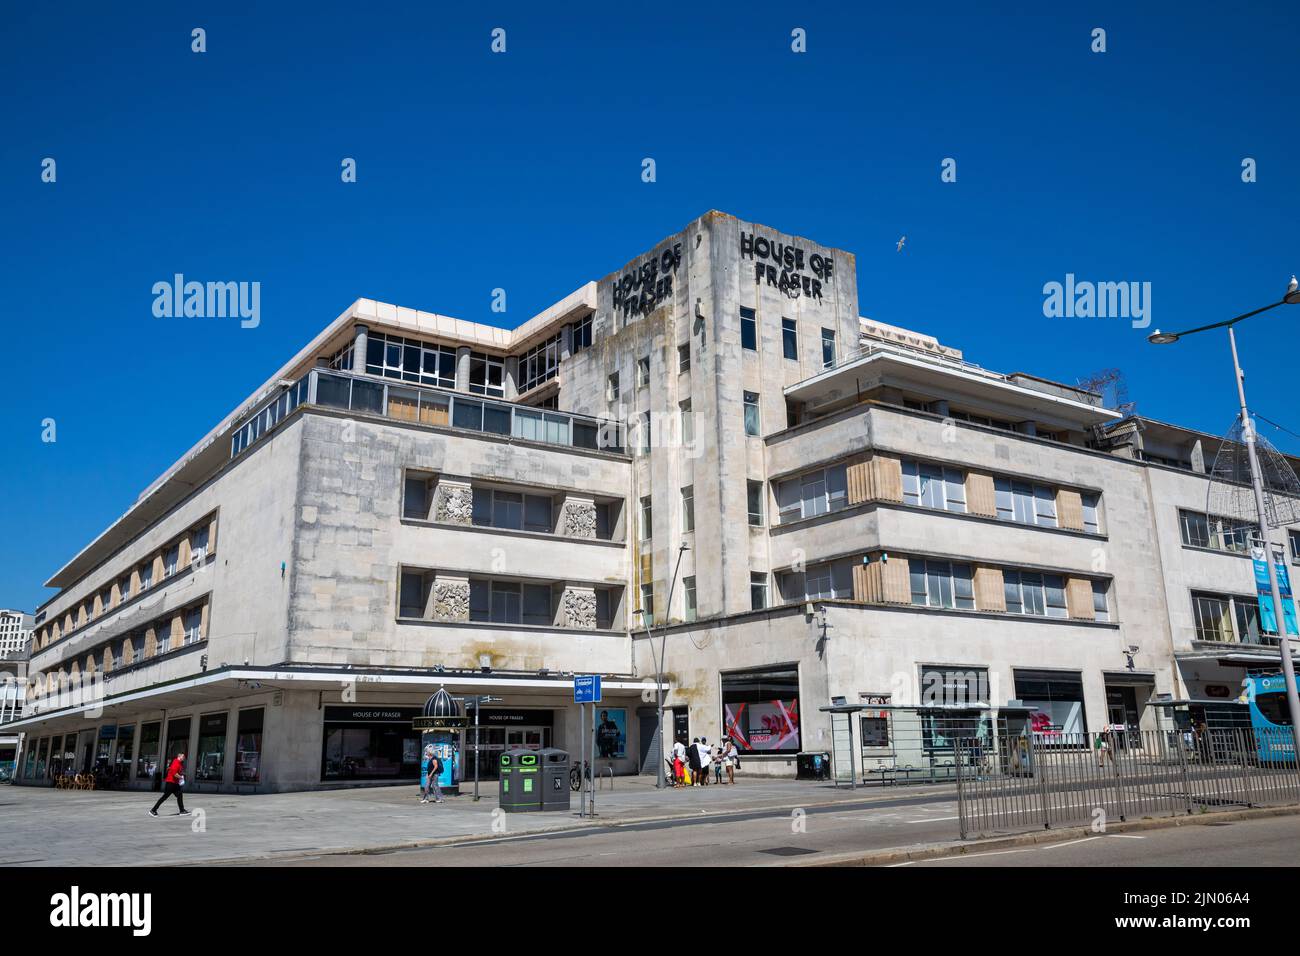 Casa de Fraser Store en Plymouth en un día soleado caliente Foto de stock